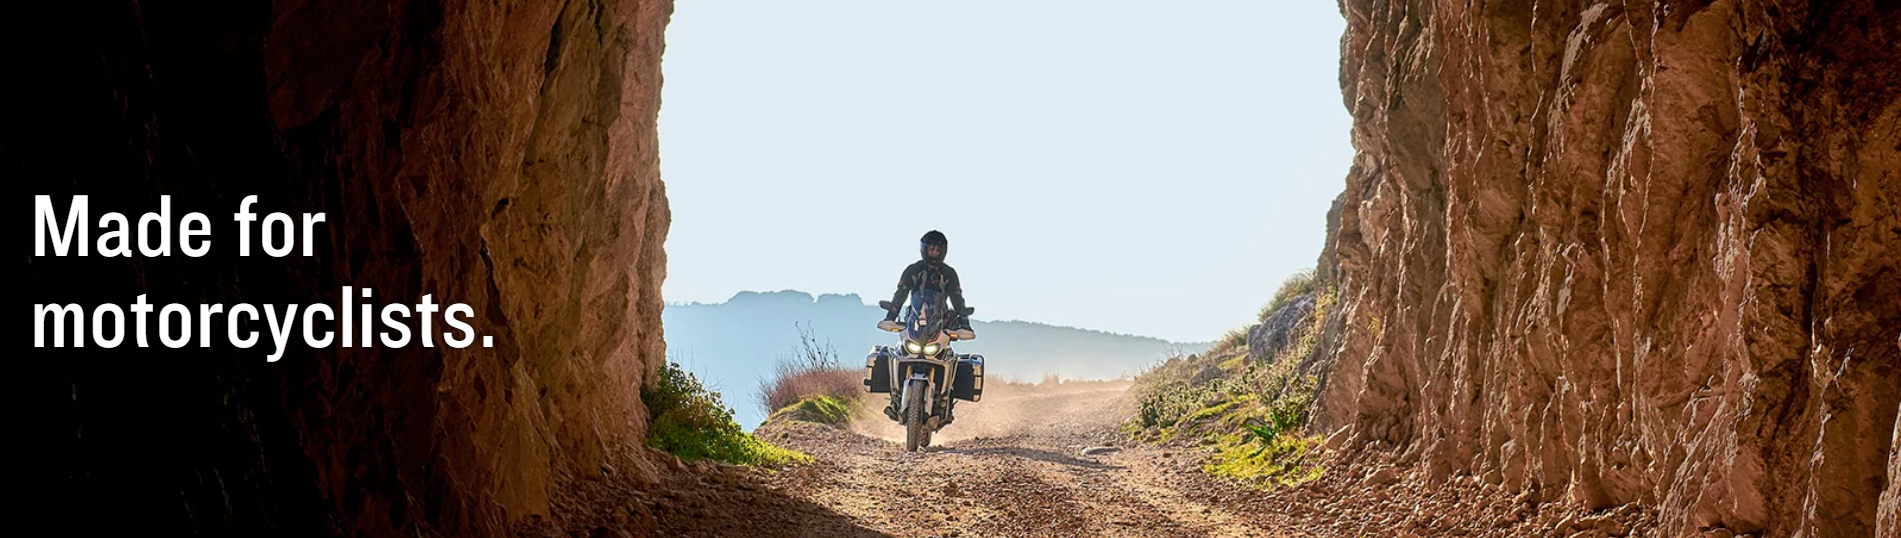 GPS para moto Garmin Zumo XT, ¿el mejor GPS de moto para viajar? · Motocard